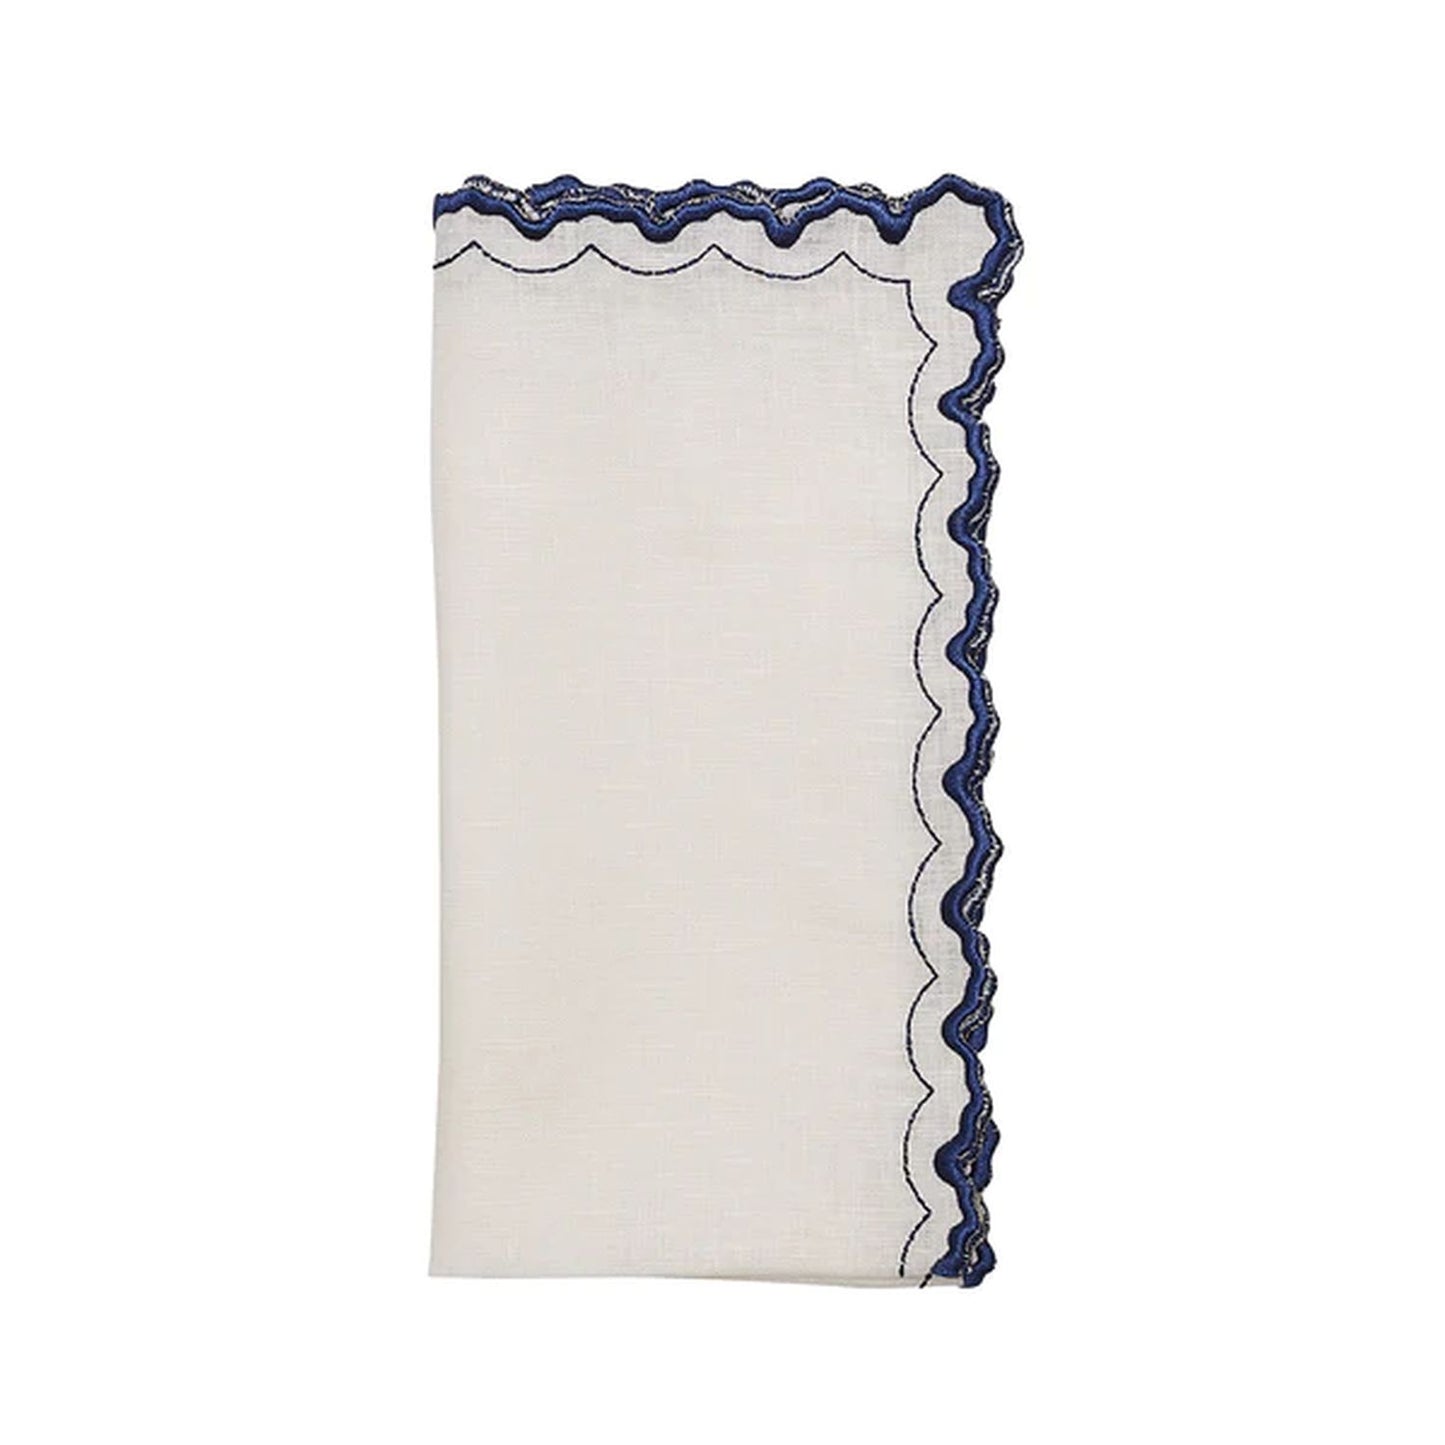 Kim Seybert Arches Napkin in White & Blue, Set of 4